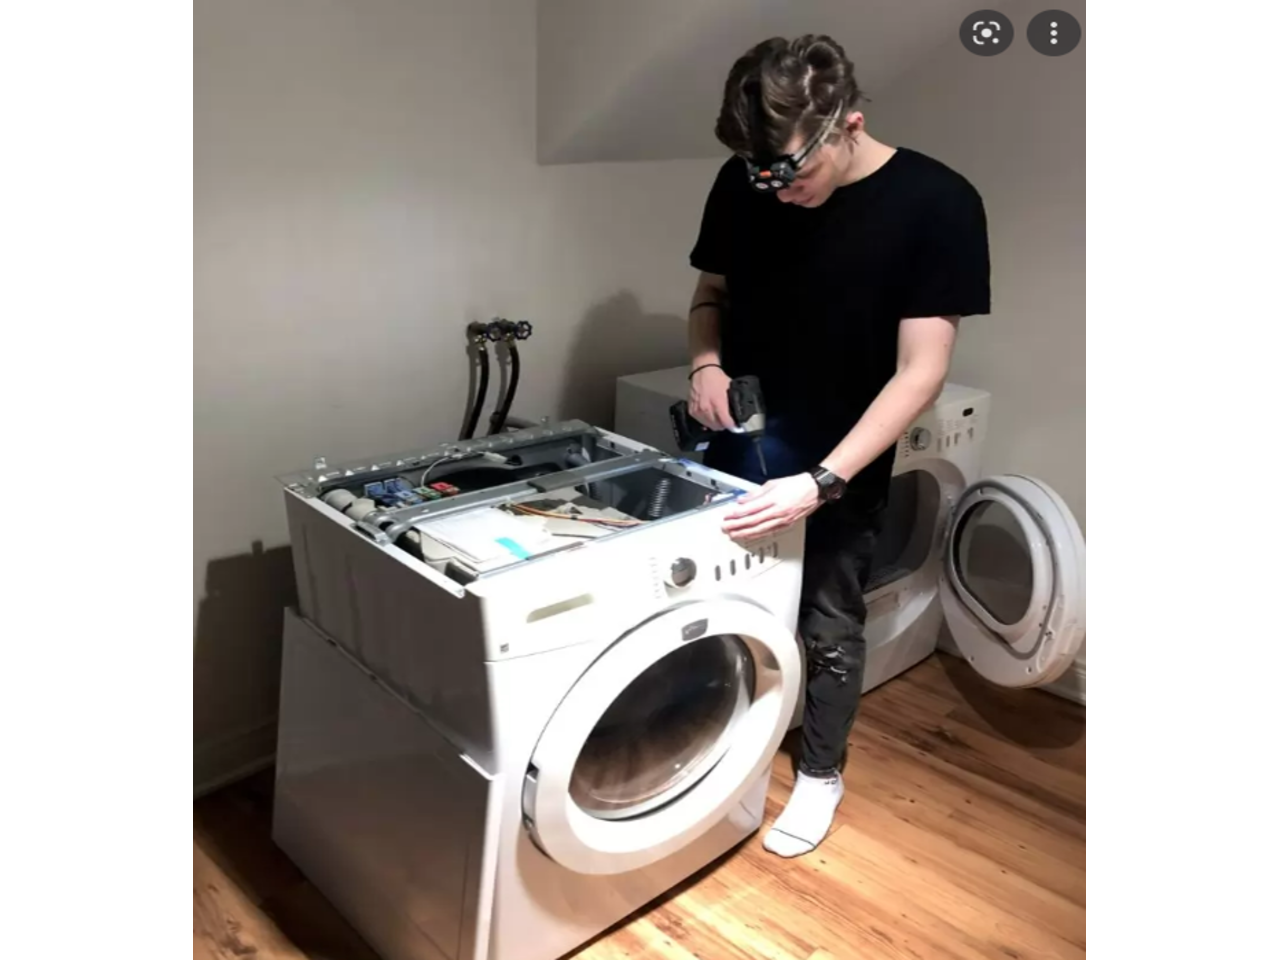 Ремонт стиральных машин в геленджике